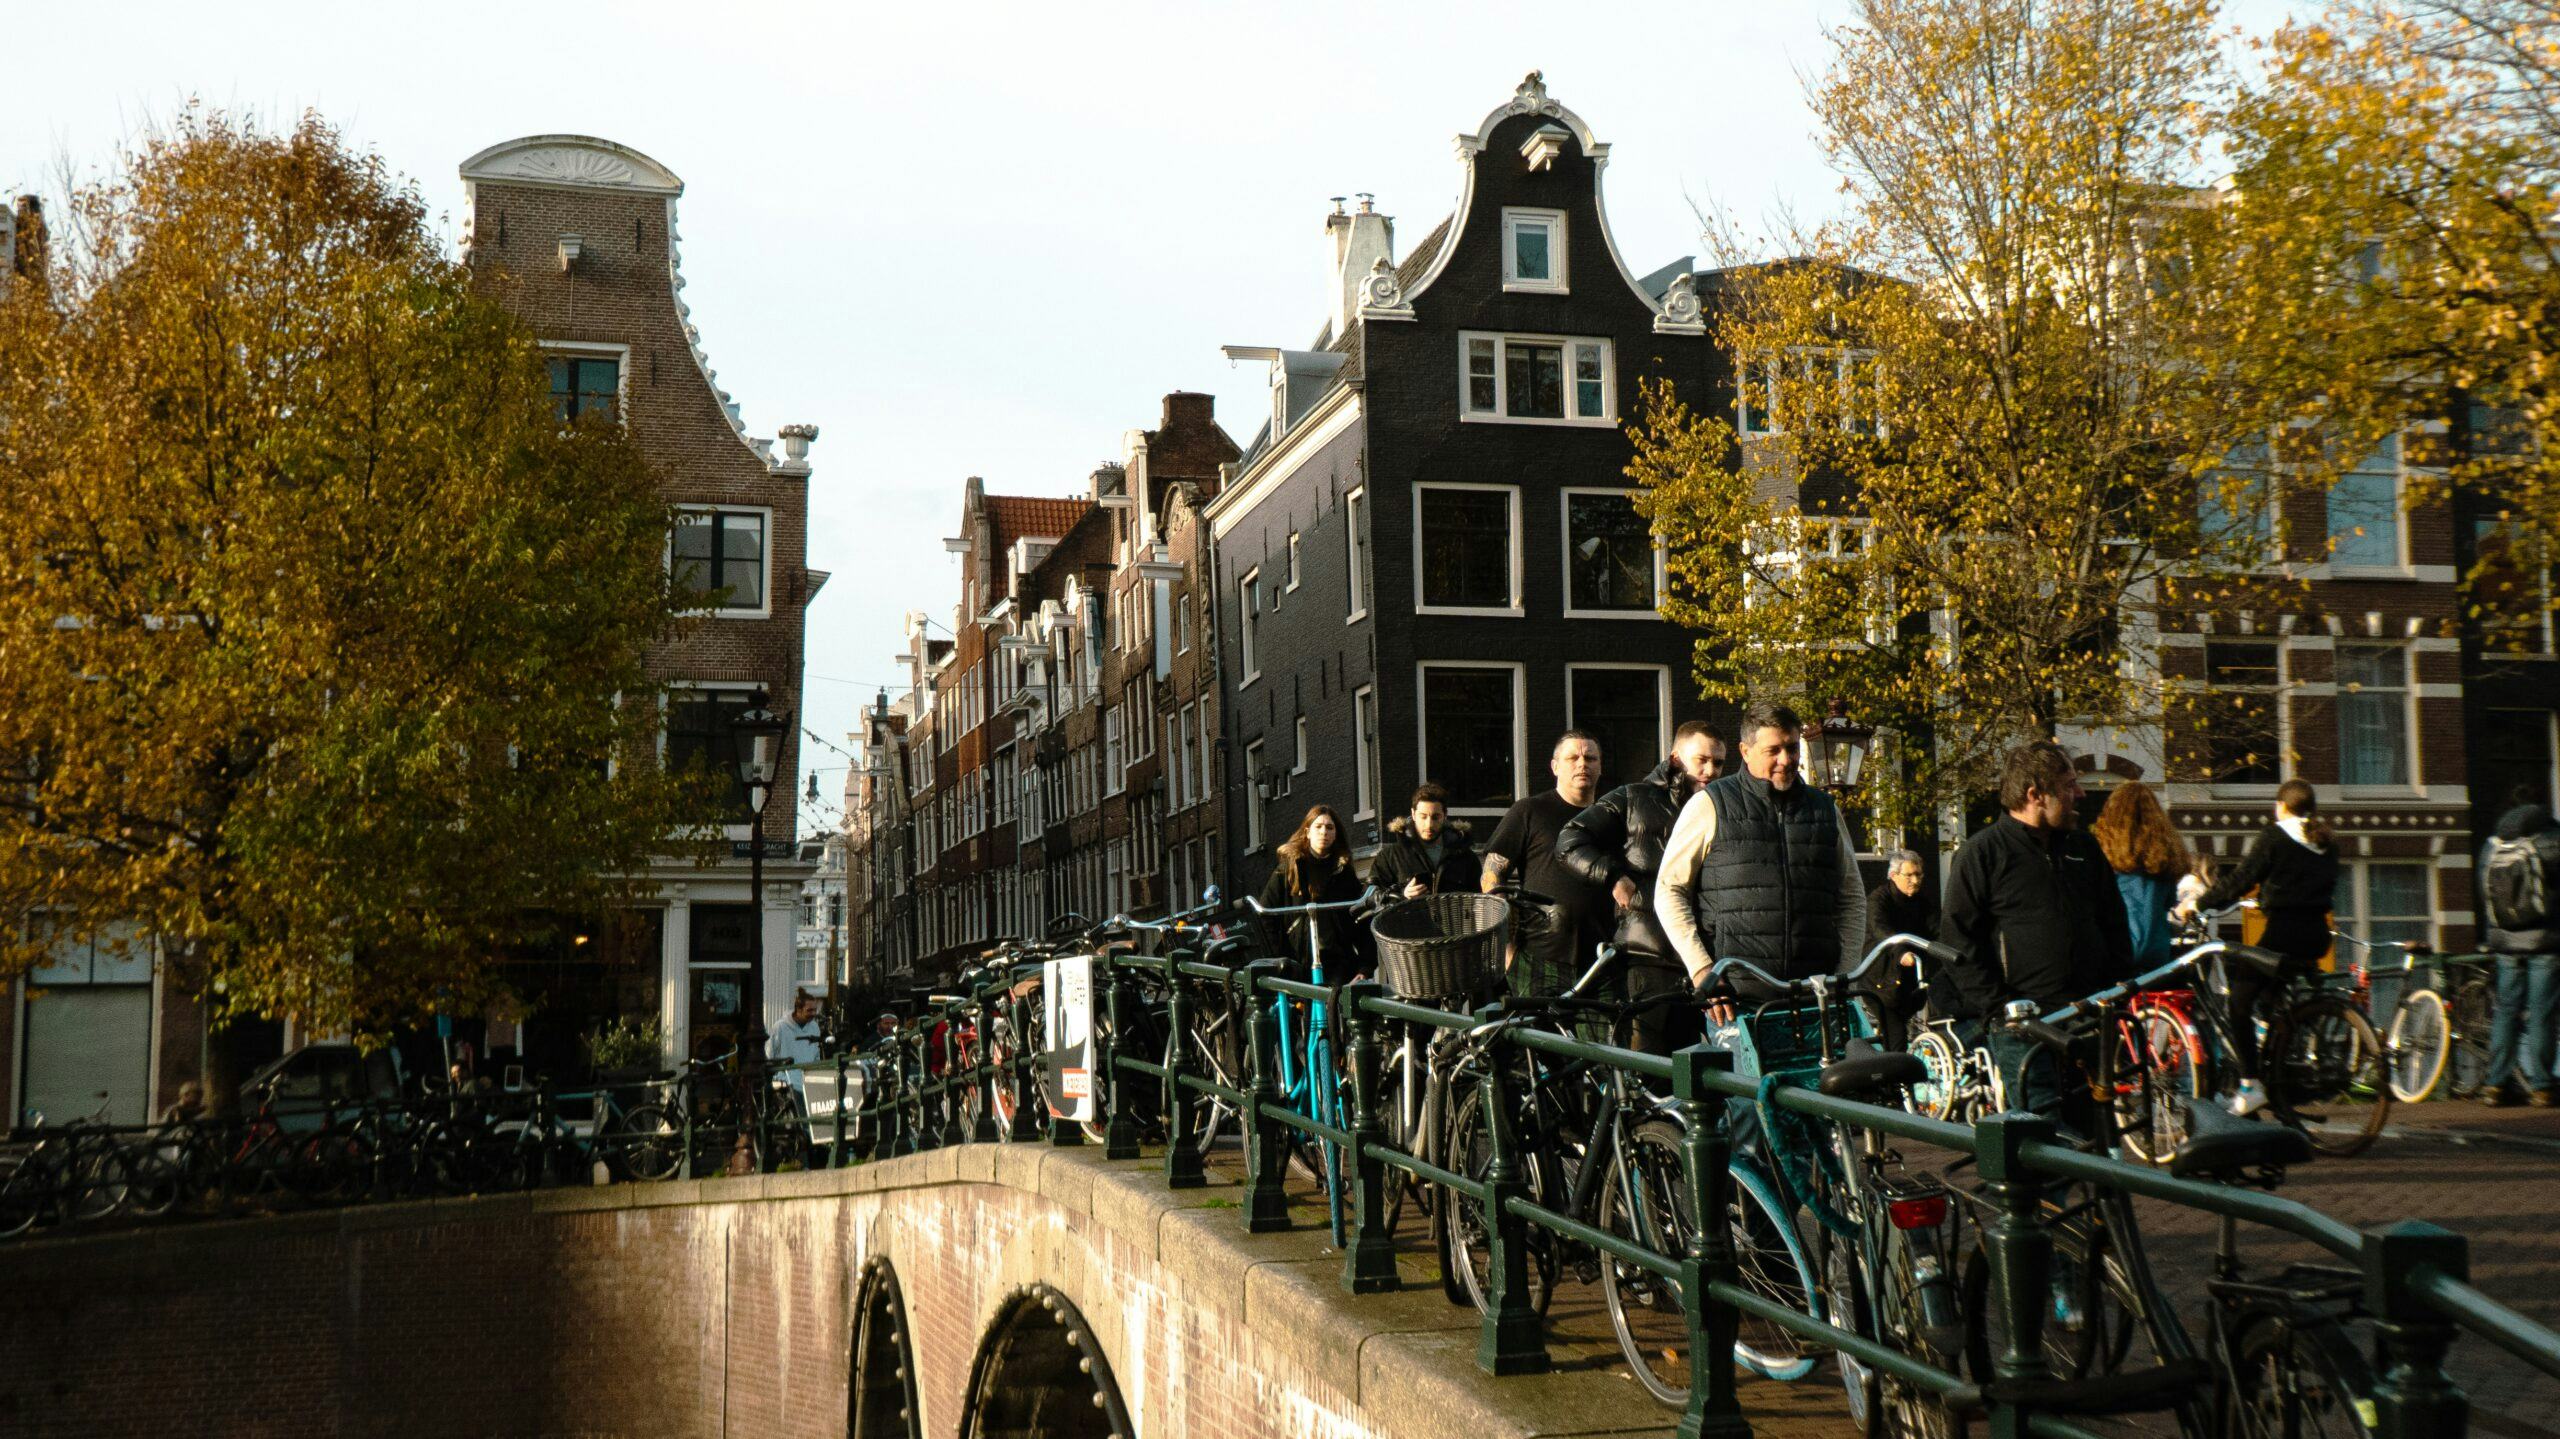 Amsterdamse hotels mogelijk naar rechter om verhoging toeristenbelasting